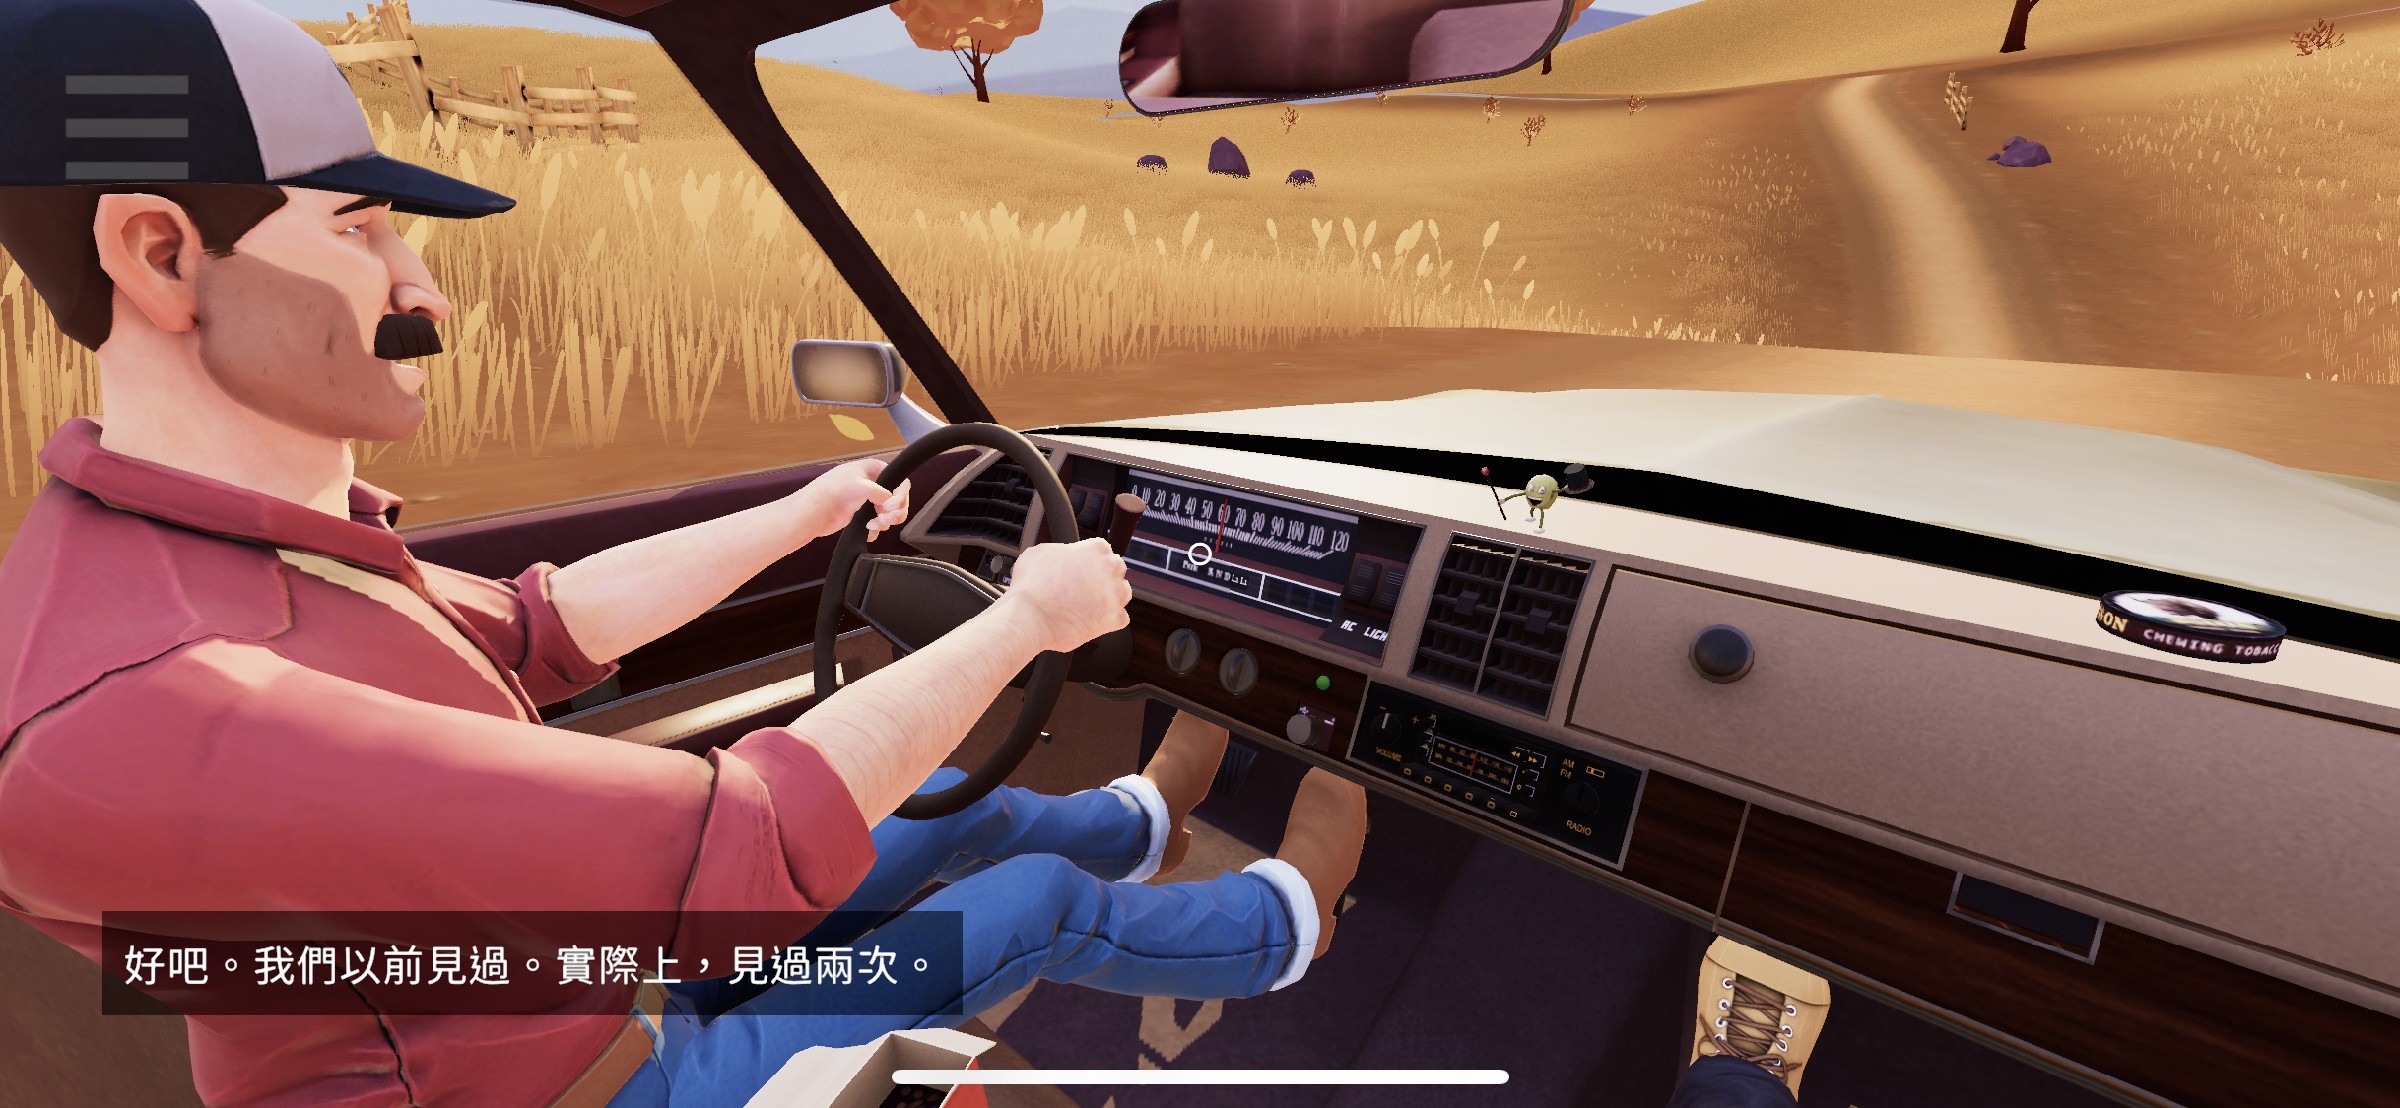 文字冒险游戏《便车旅人》透过一次又一次搭便车探索未知事物与寻找自我